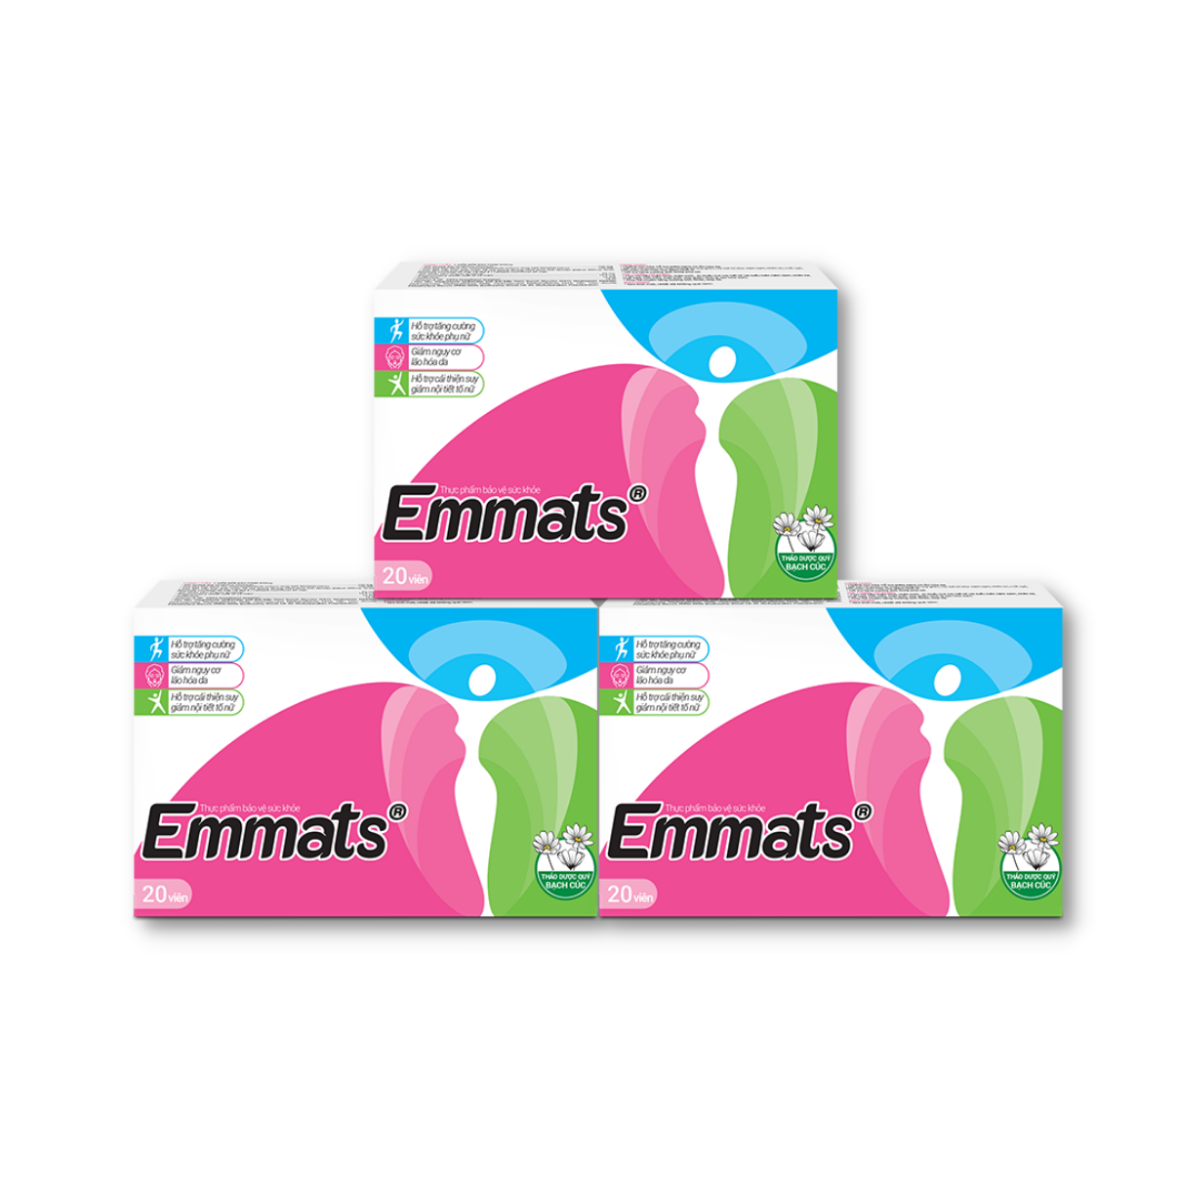 Viên uống Emmats hỗ trợ cải thiện suy giảm nội tiết tố nữ (Hộp 20 viên)